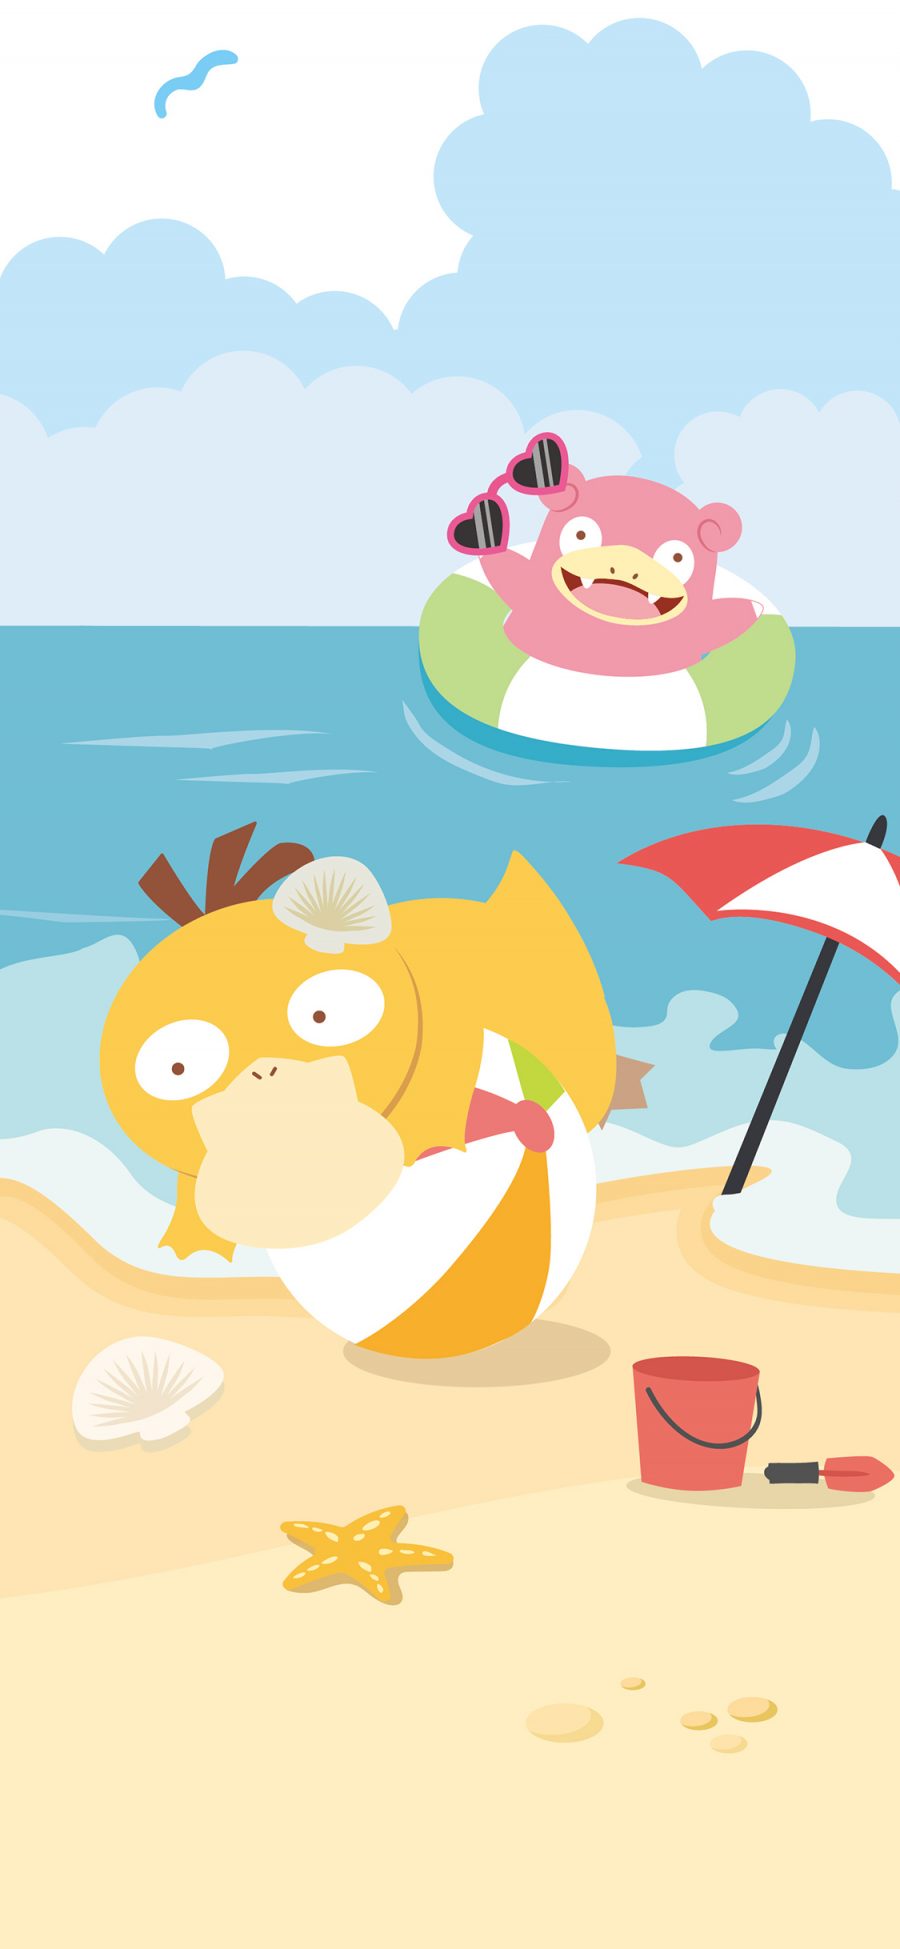 [2436×1125]神奇宝贝 卡通 可达鸭 沙滩 夏日 苹果手机动漫壁纸图片